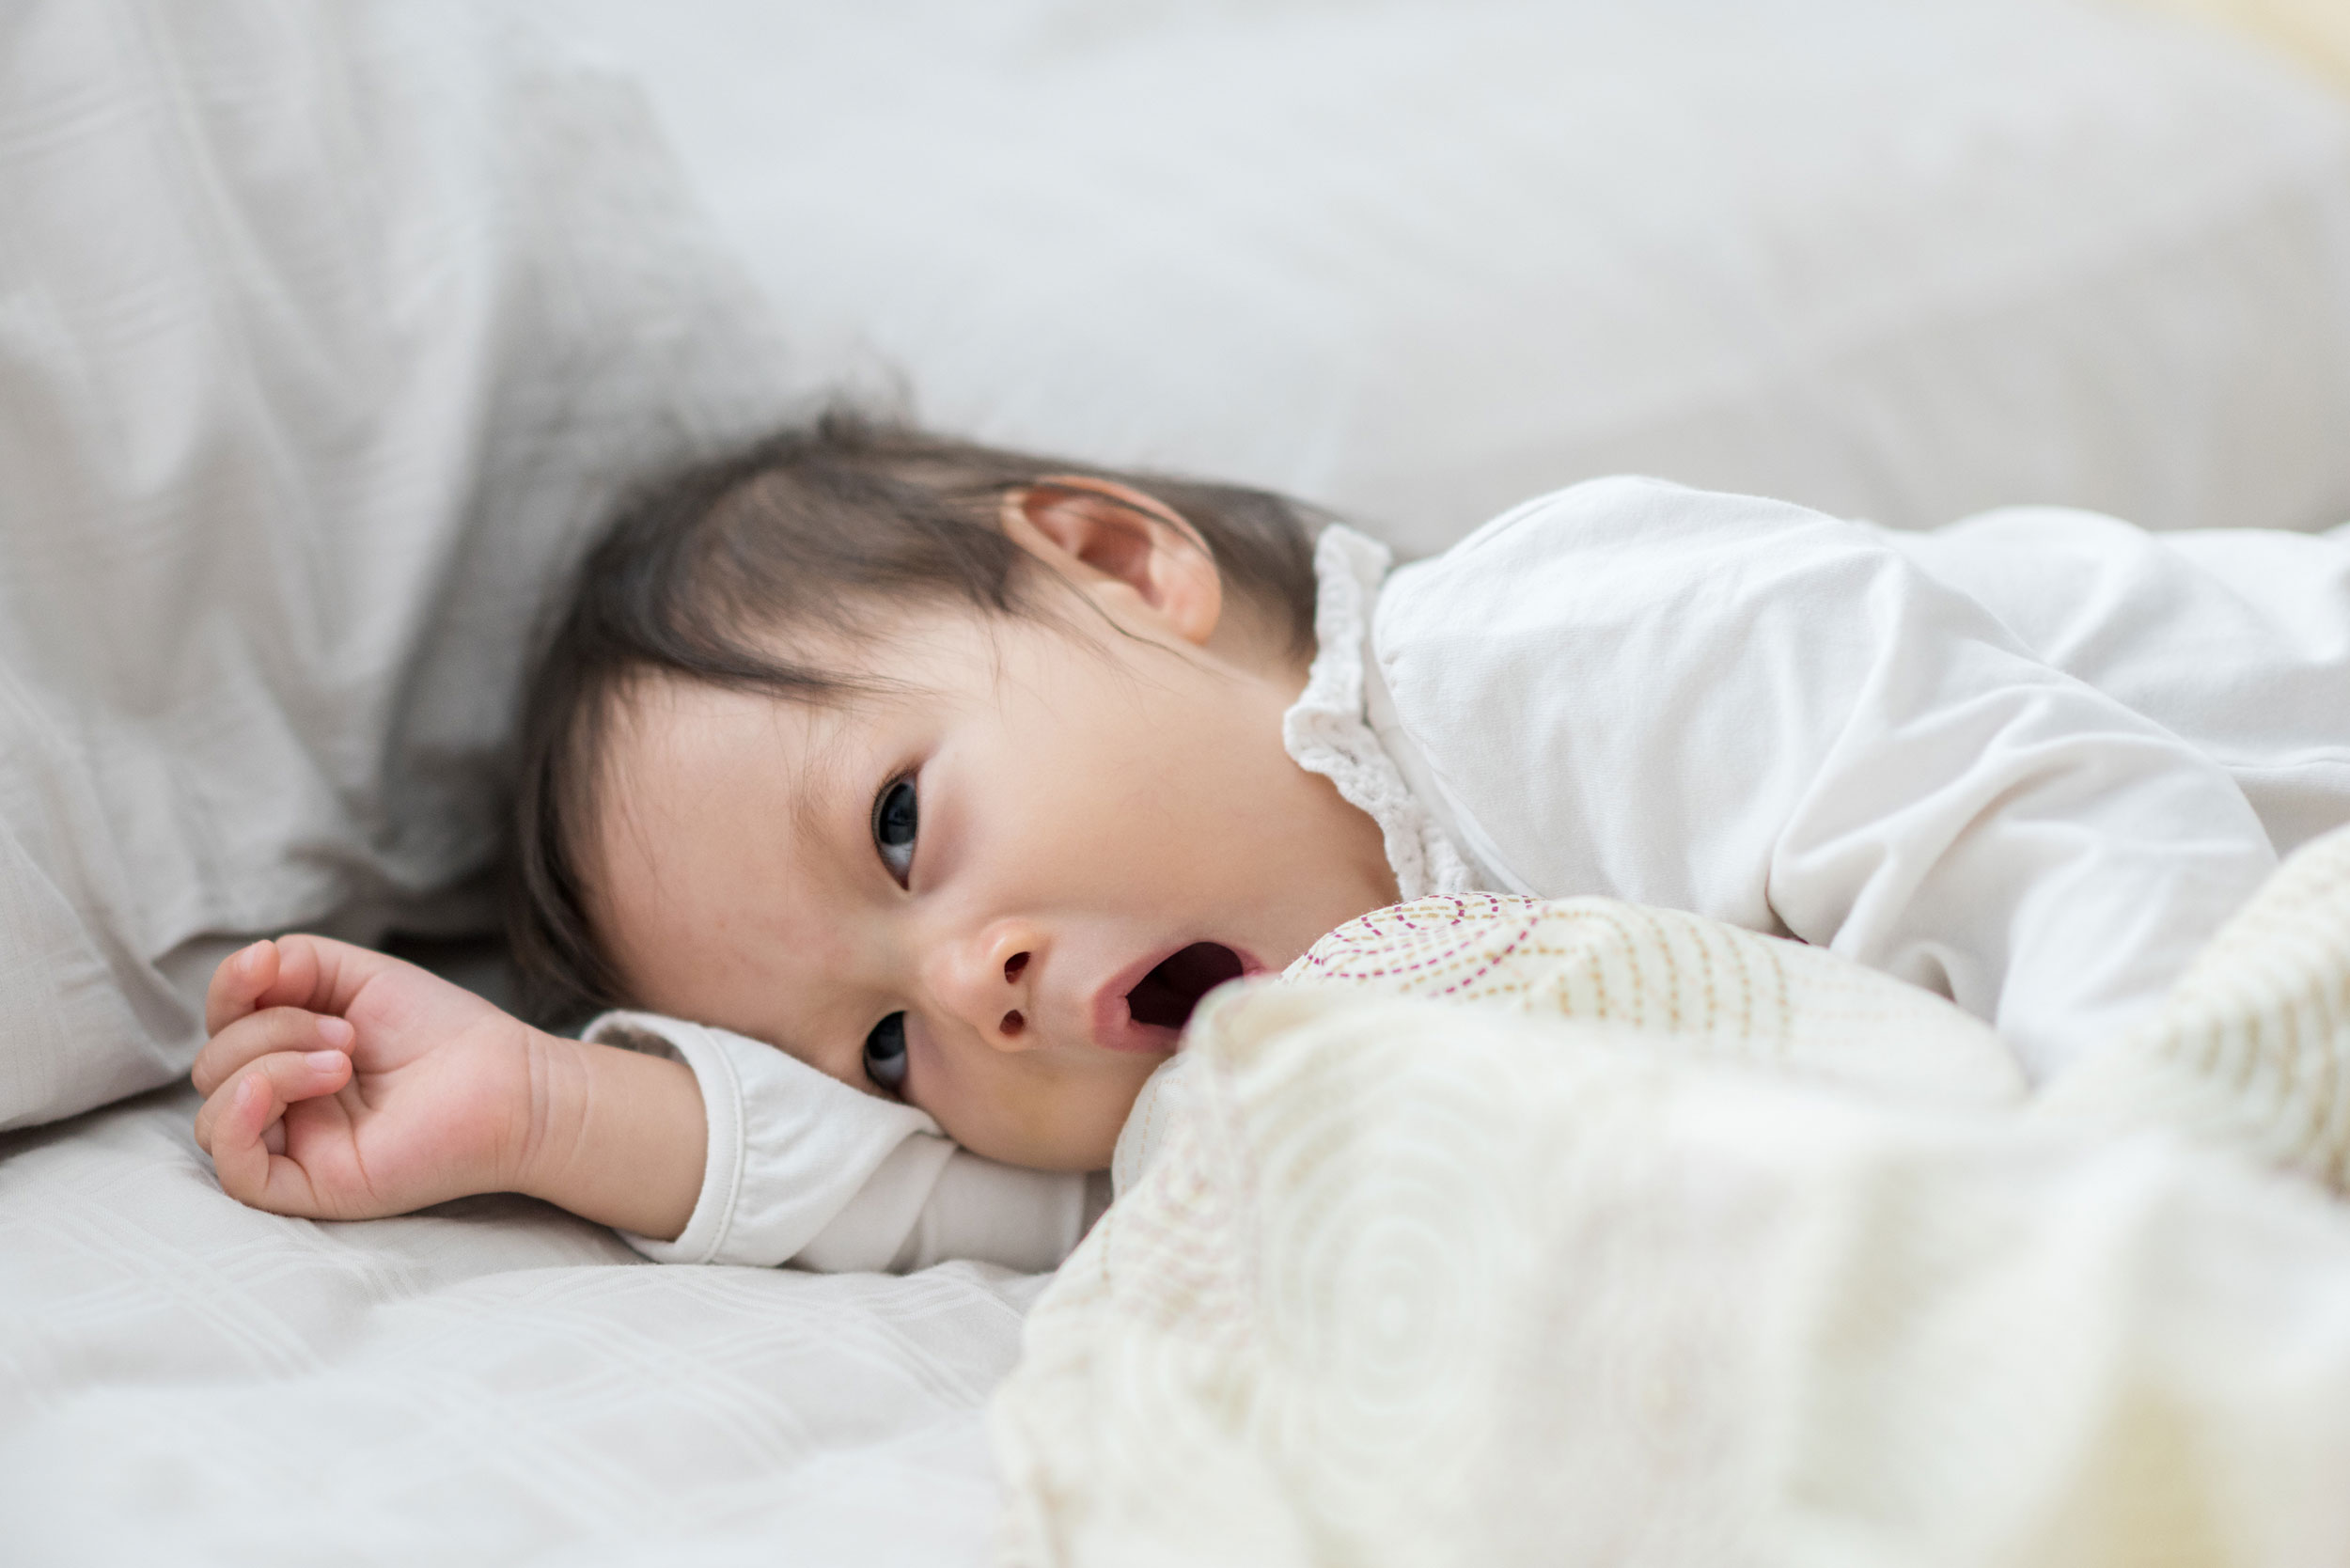 Sering bangun tengah malam juga bisa jadi tanda bayi sedang alami kecepatan pertumbuhan